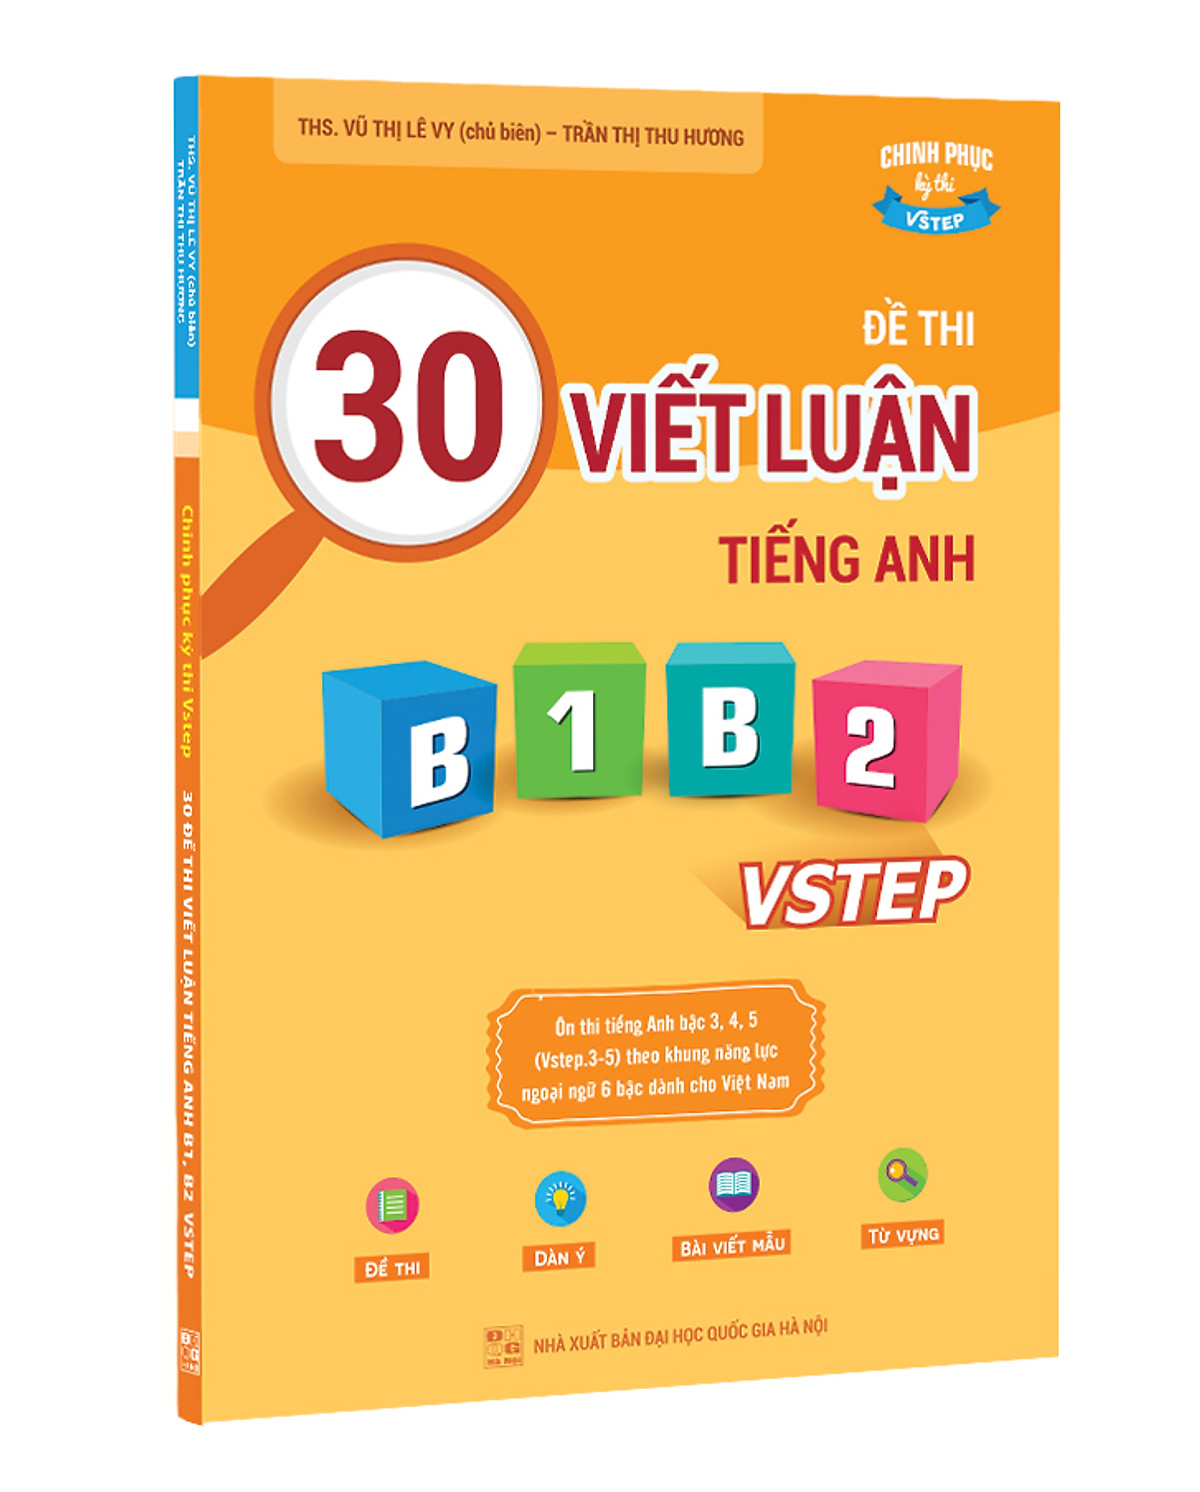 Mua Sách 30 Đề Thi Viết Luận Tiếng Anh B1, B2 Vstep - Ôn Thi Tiếng Anh Bậc  3, 4, 5 Theo Khung Năng Lực Ngoại Ngữ 6 Bậc Việt Nam Tại Anh Ngữ Vivian